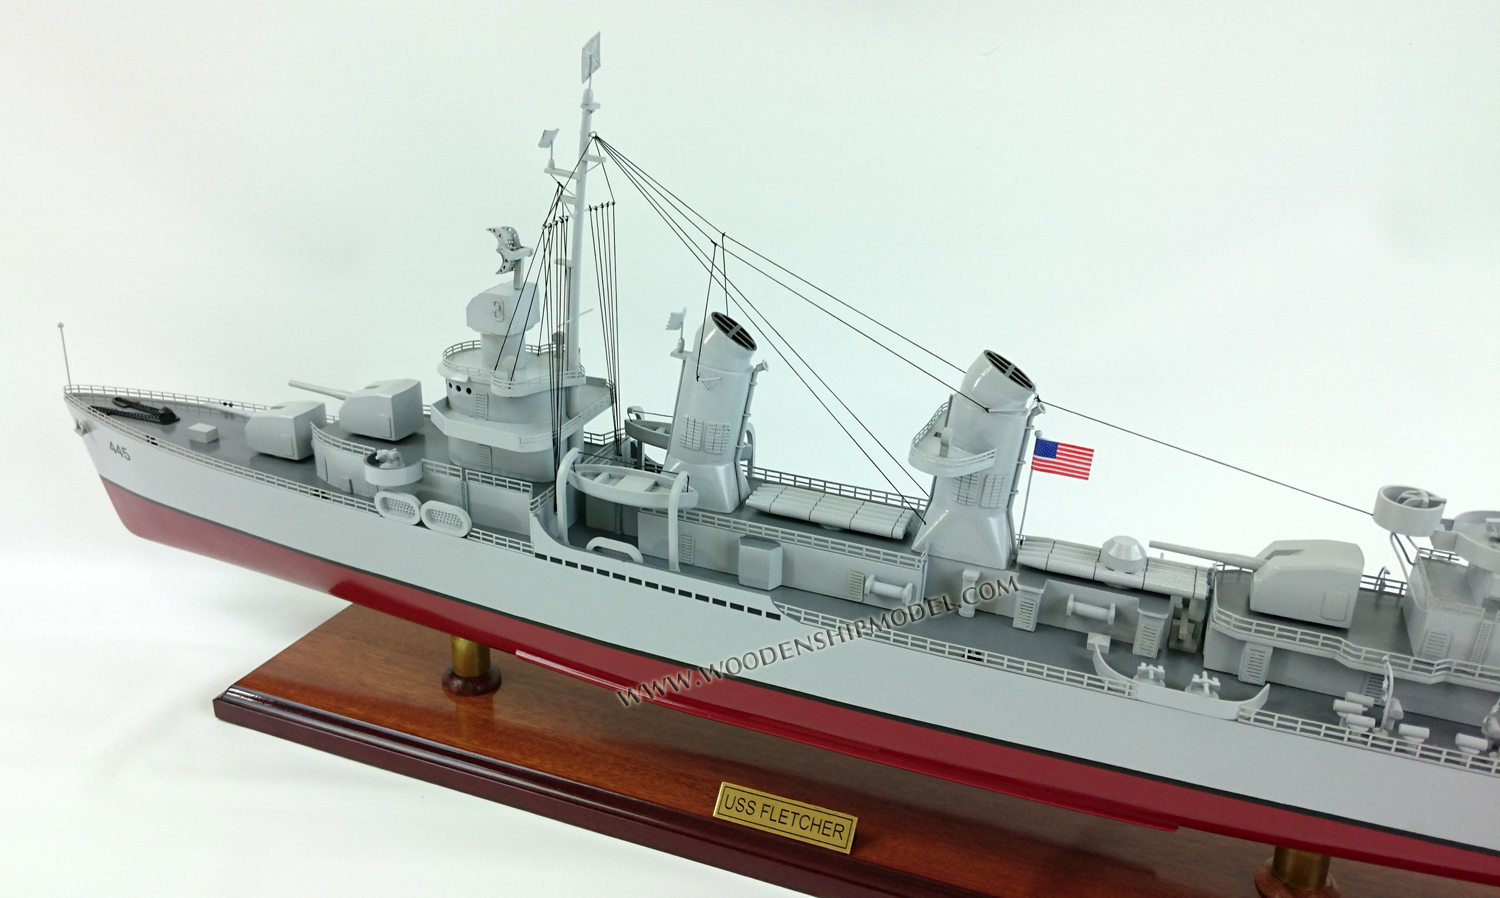 USS Fletcher - Class Destroyer